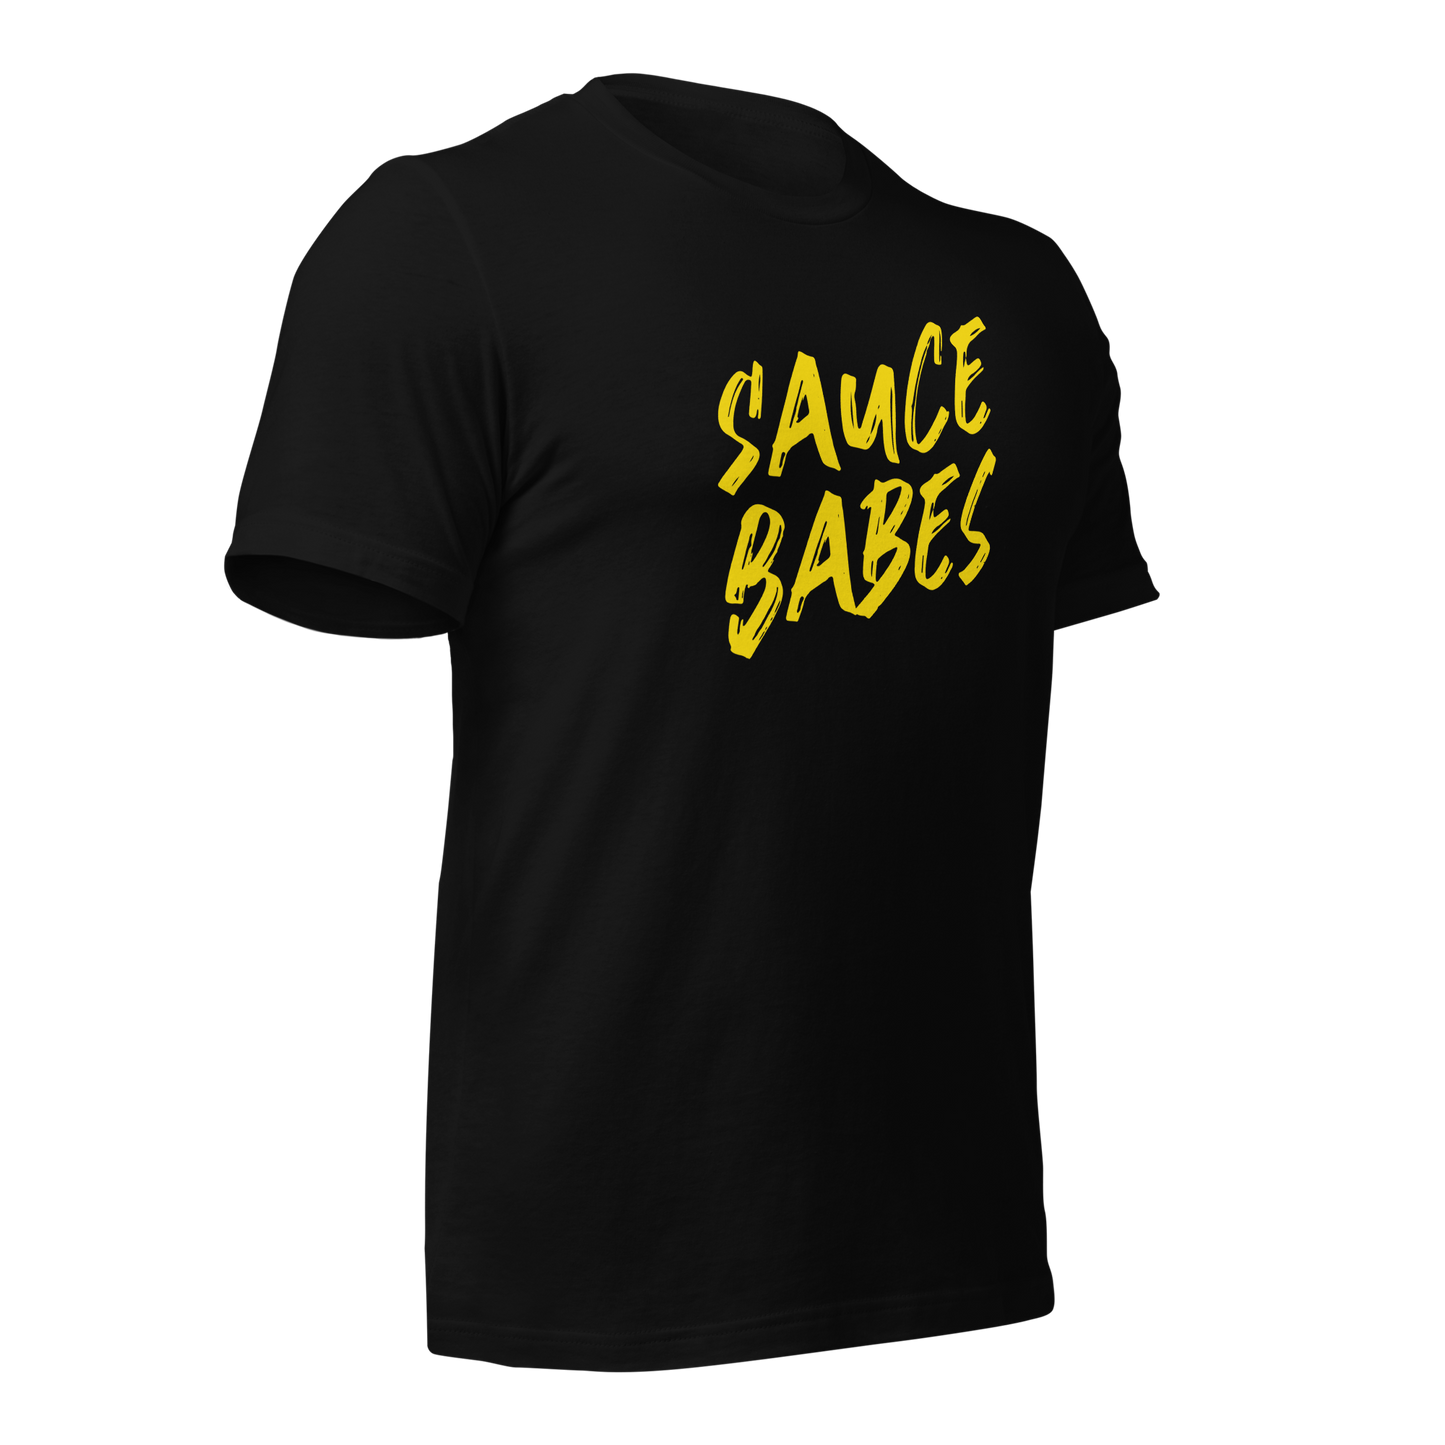 Sauce Babes T-Shirt